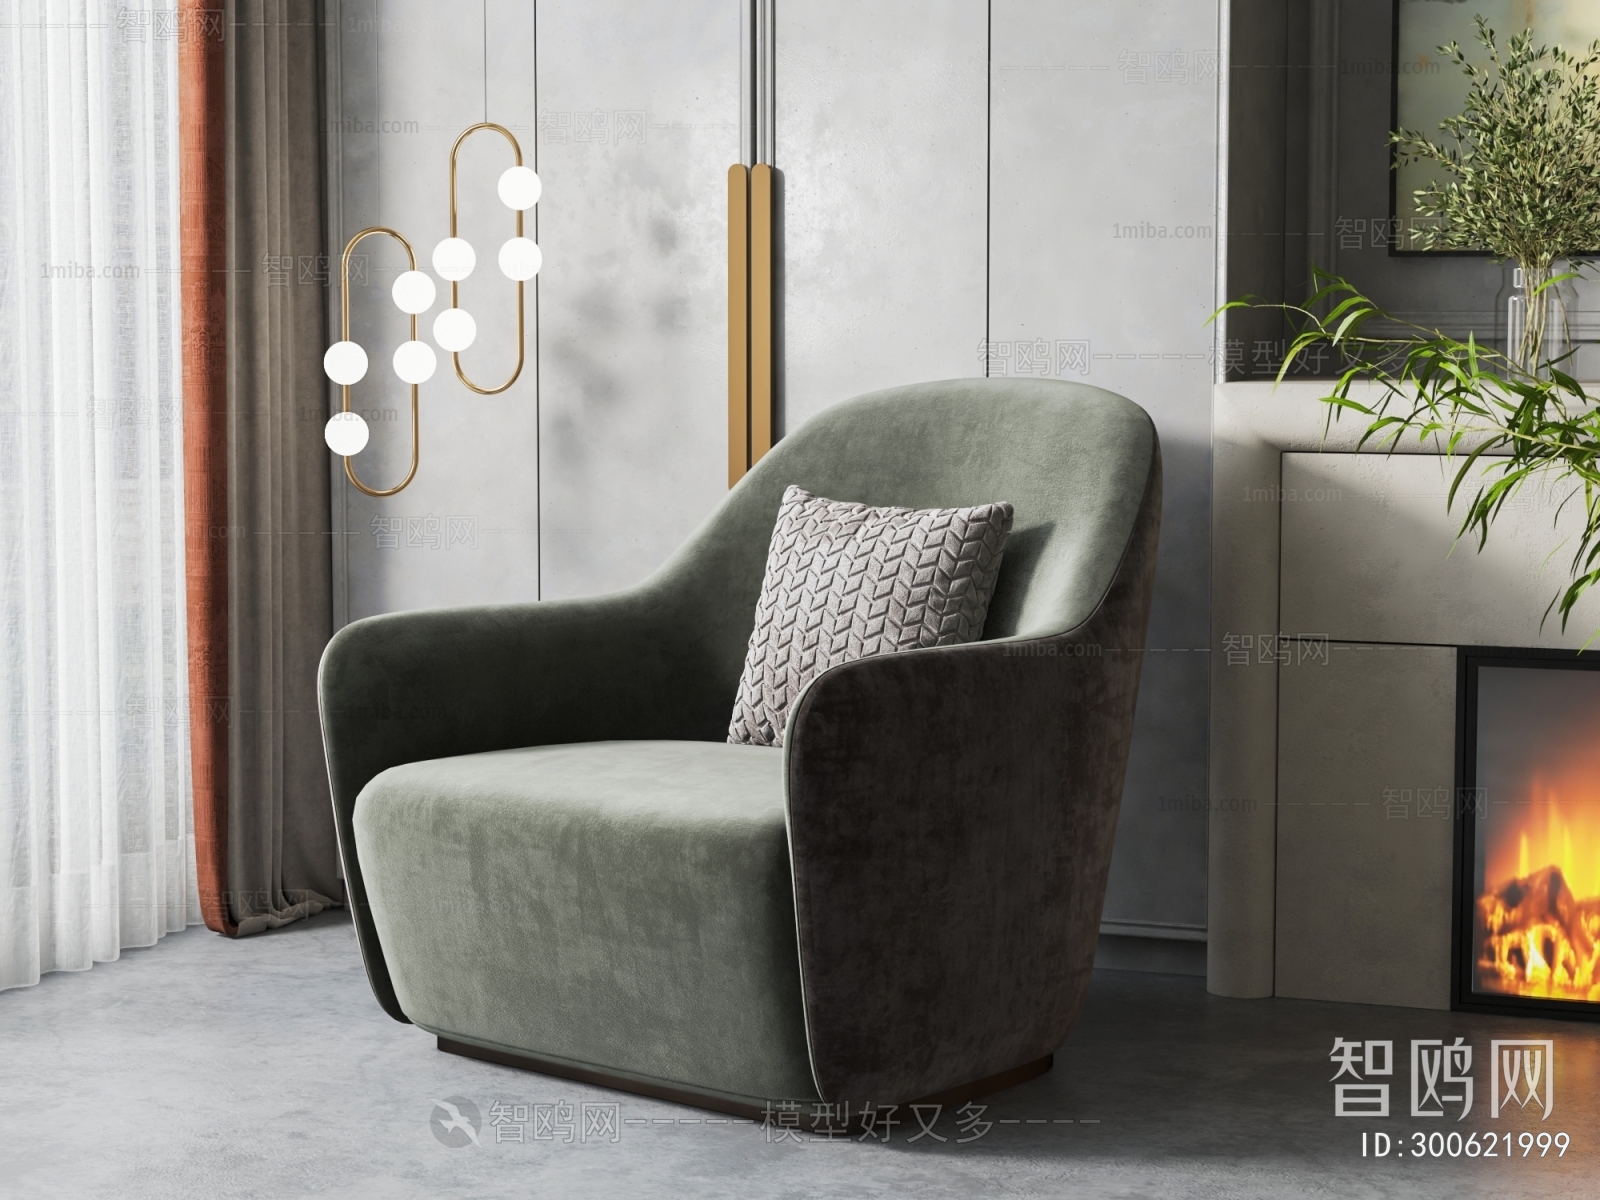 Simple European Style Single Sofa